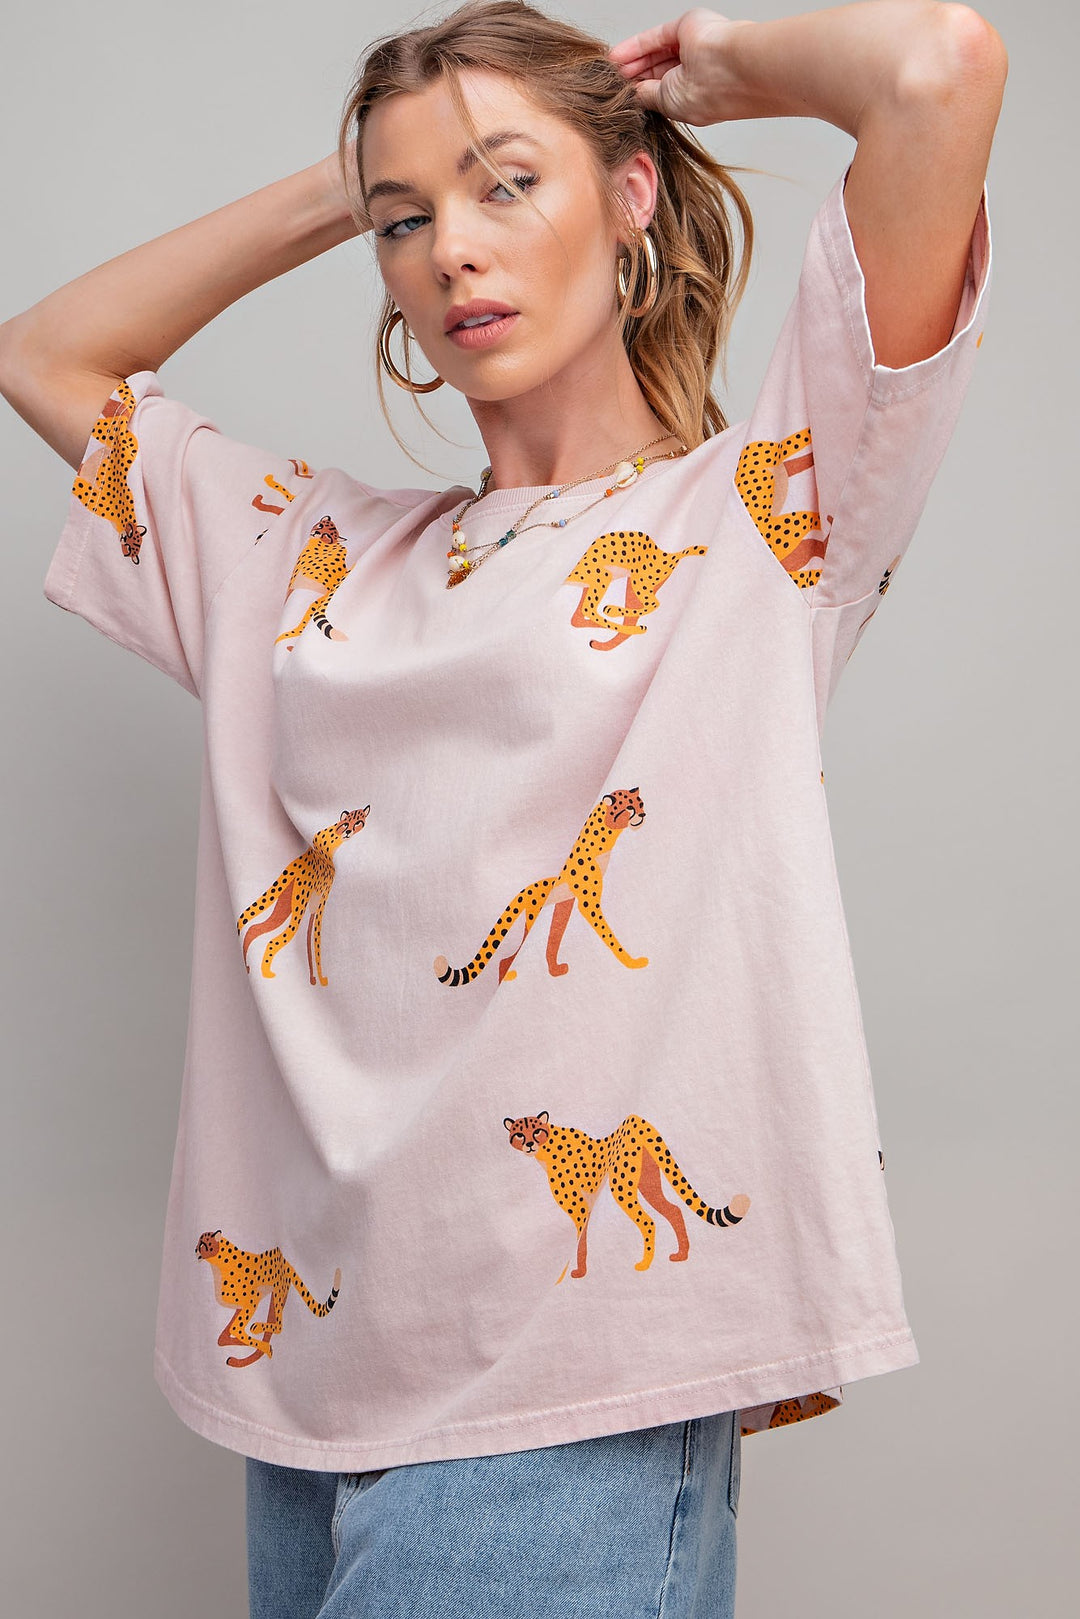 Short Sleeve Cheetah Print T-shirt